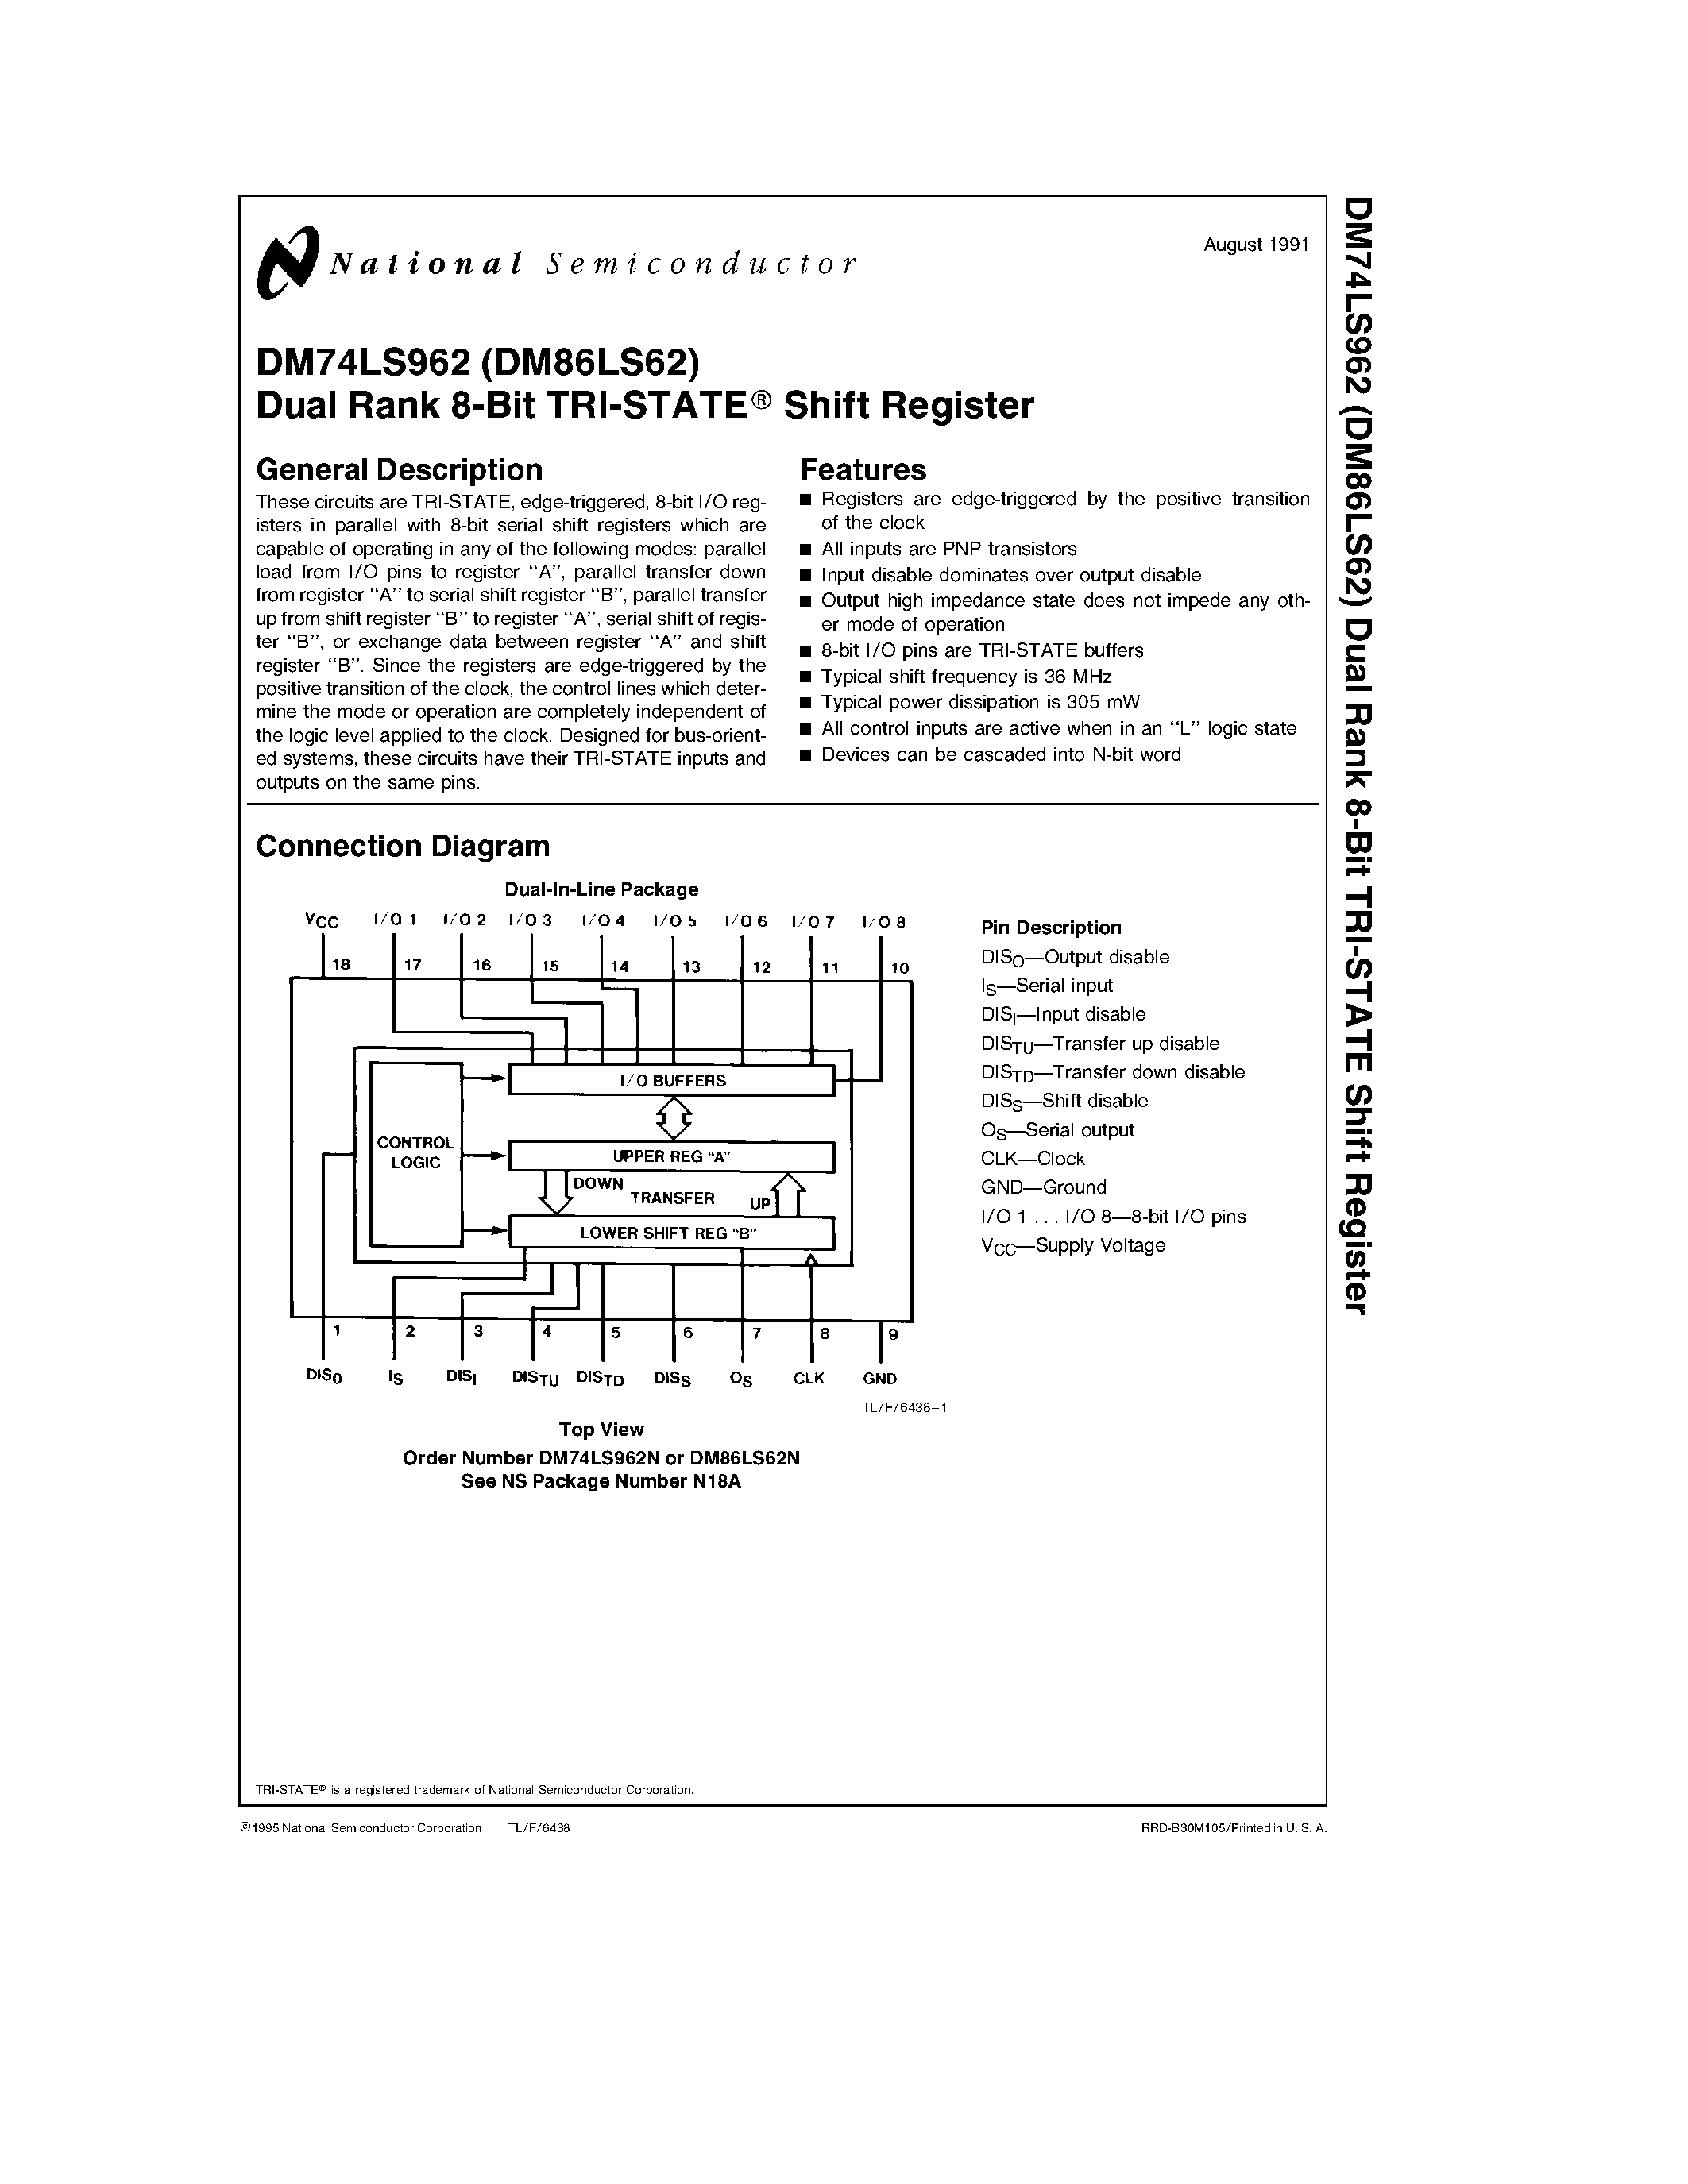 Даташит DM74LS962 - Dual Rank 8-Bit TRI-STATE Shift Register страница 1